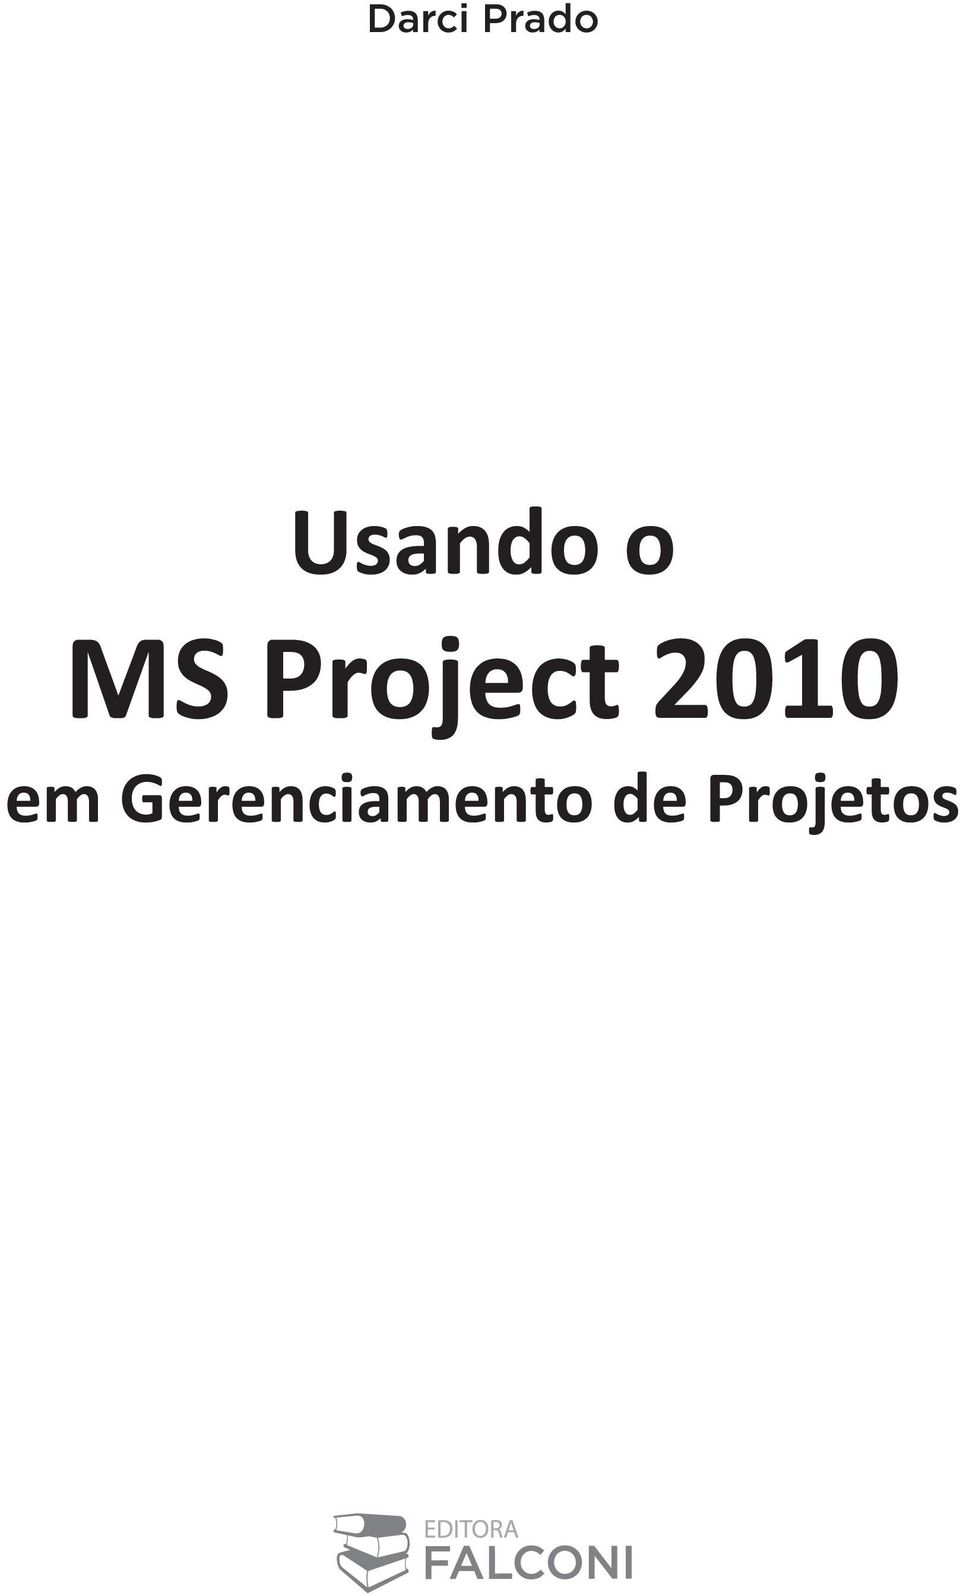 Project 2010 em